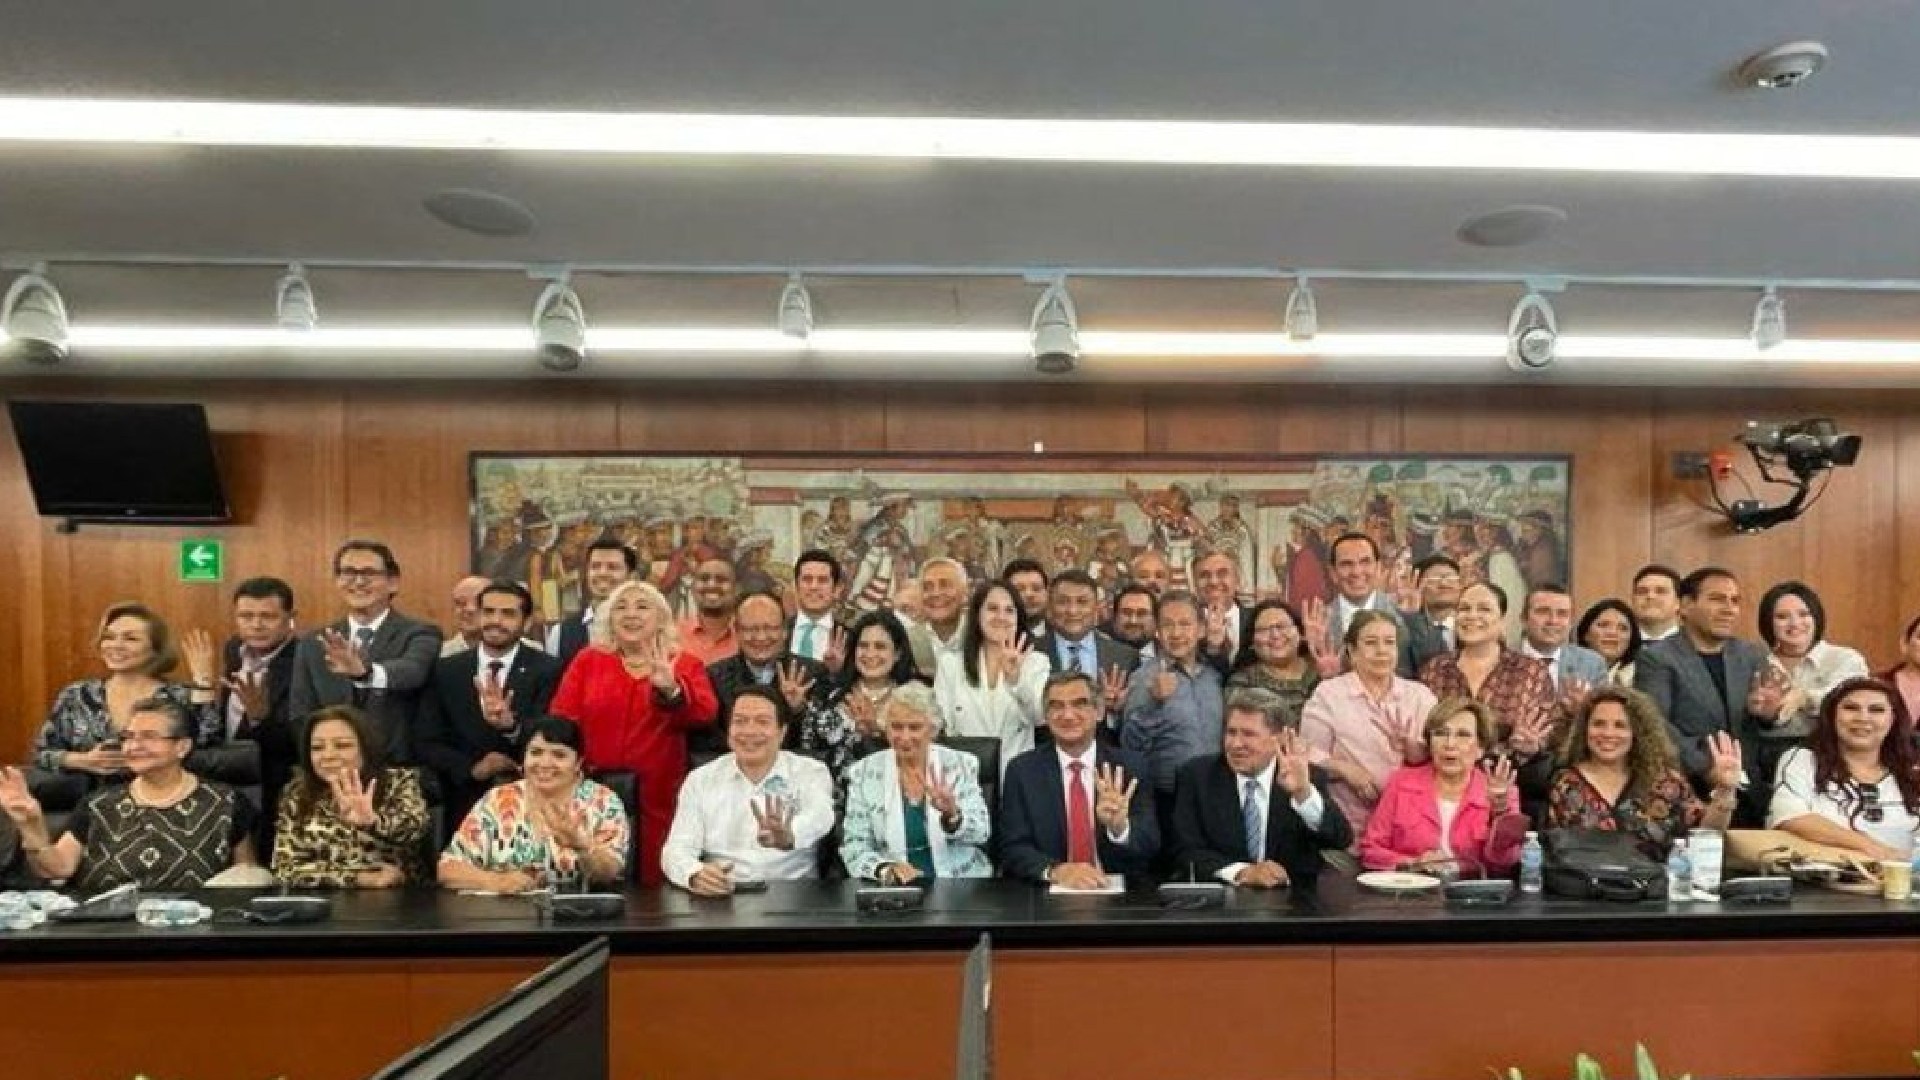 El PAN condenó la celebración que se le hizo a Américo Villarreal en el Senado de la República (Foto: Twitter / @kenialopezr)